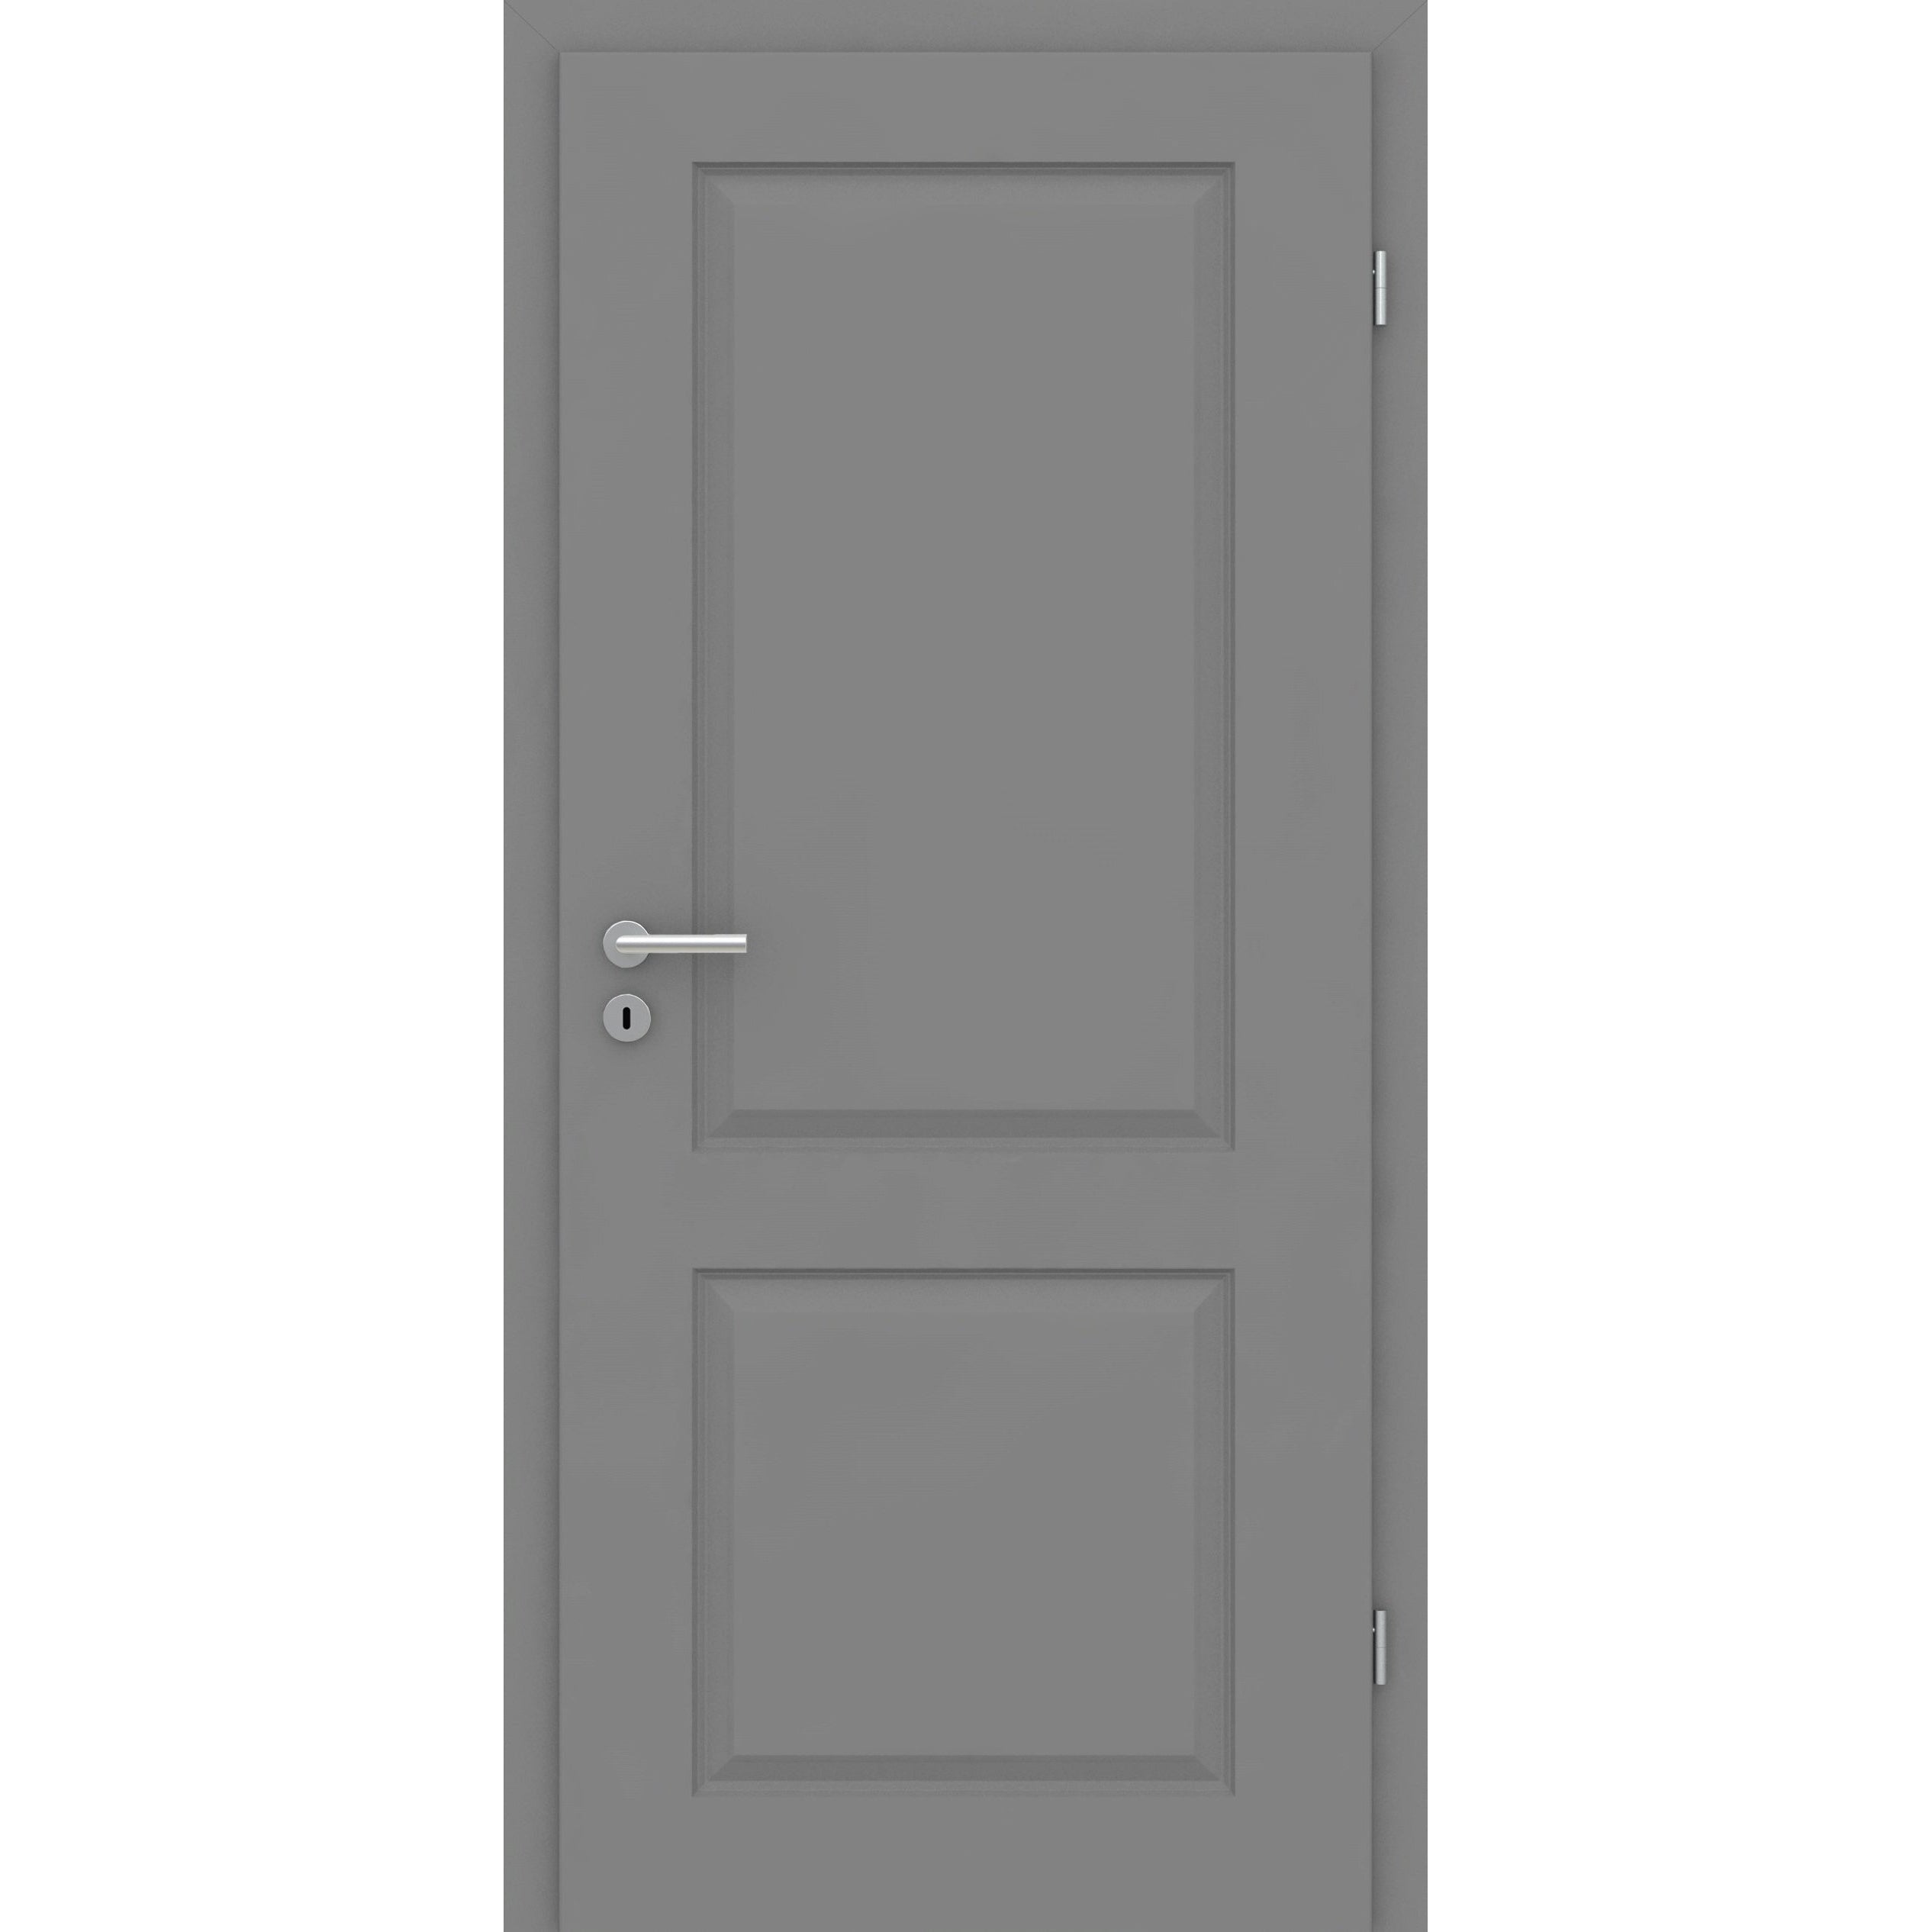 Wohnungseingangstür mit Zarge grau 2 Kassetten Designkante SK3 / KK3 - Modell Stiltür K27